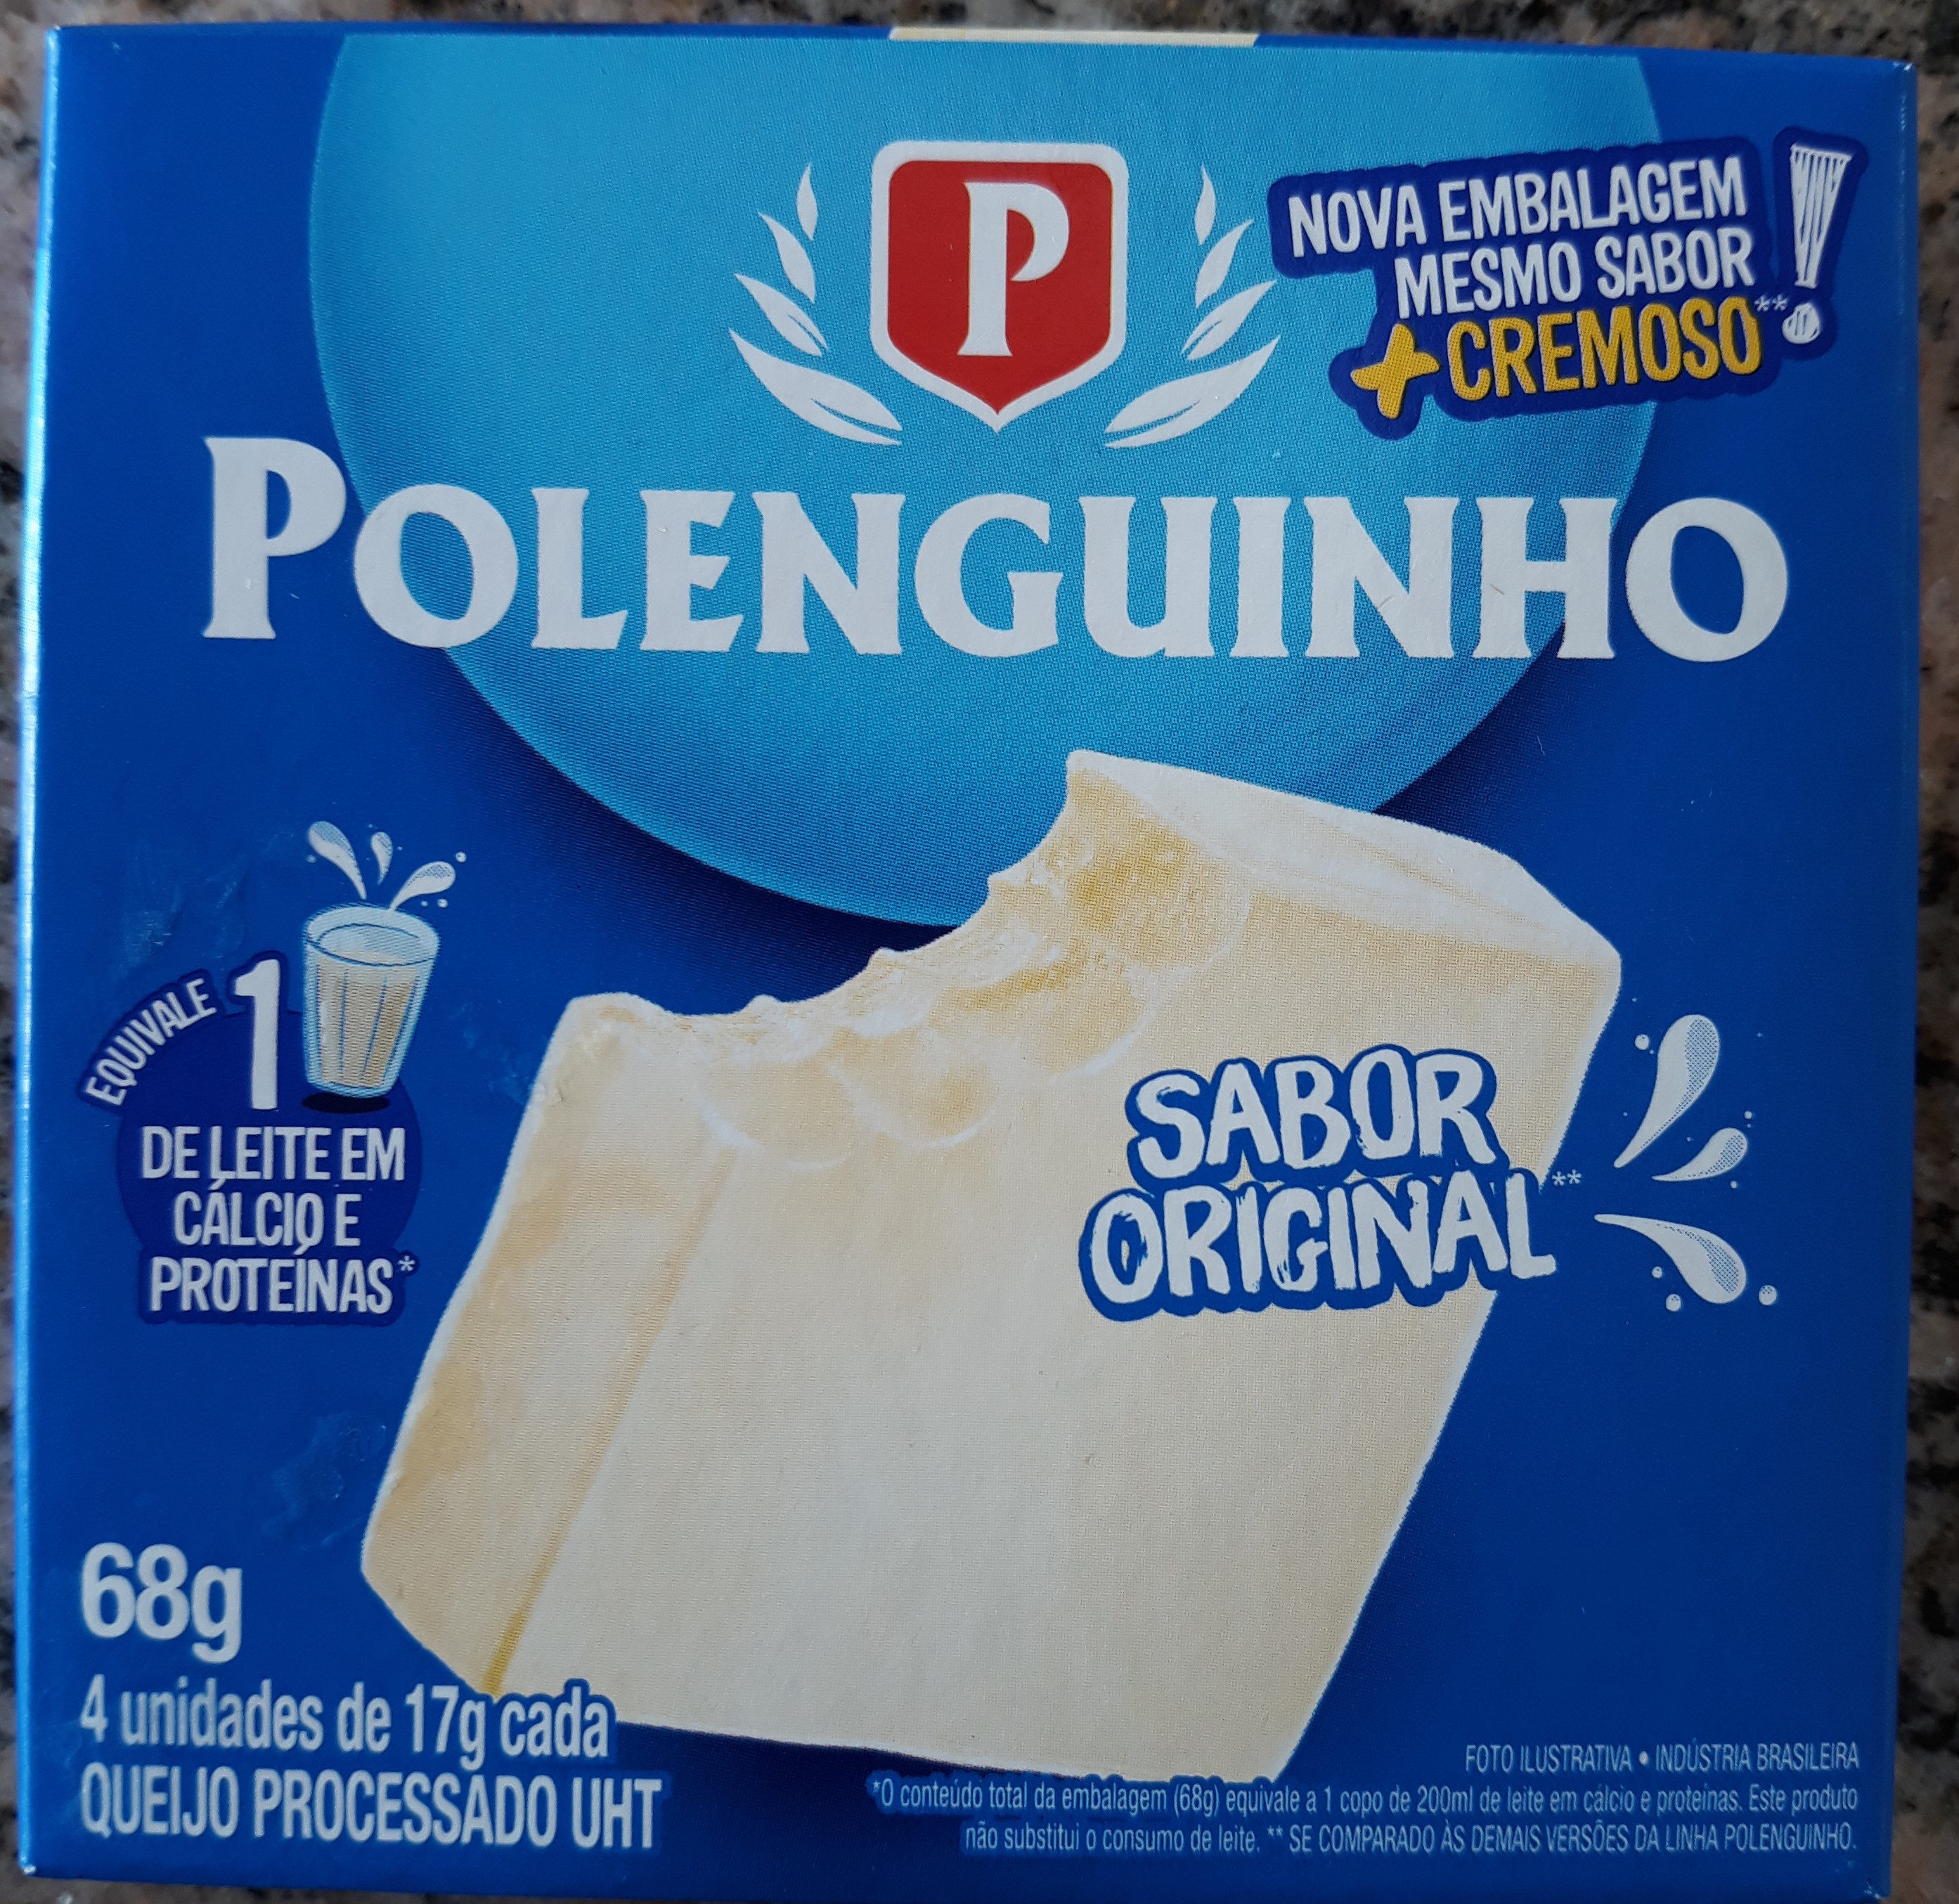 Polenguinho - Product - pt